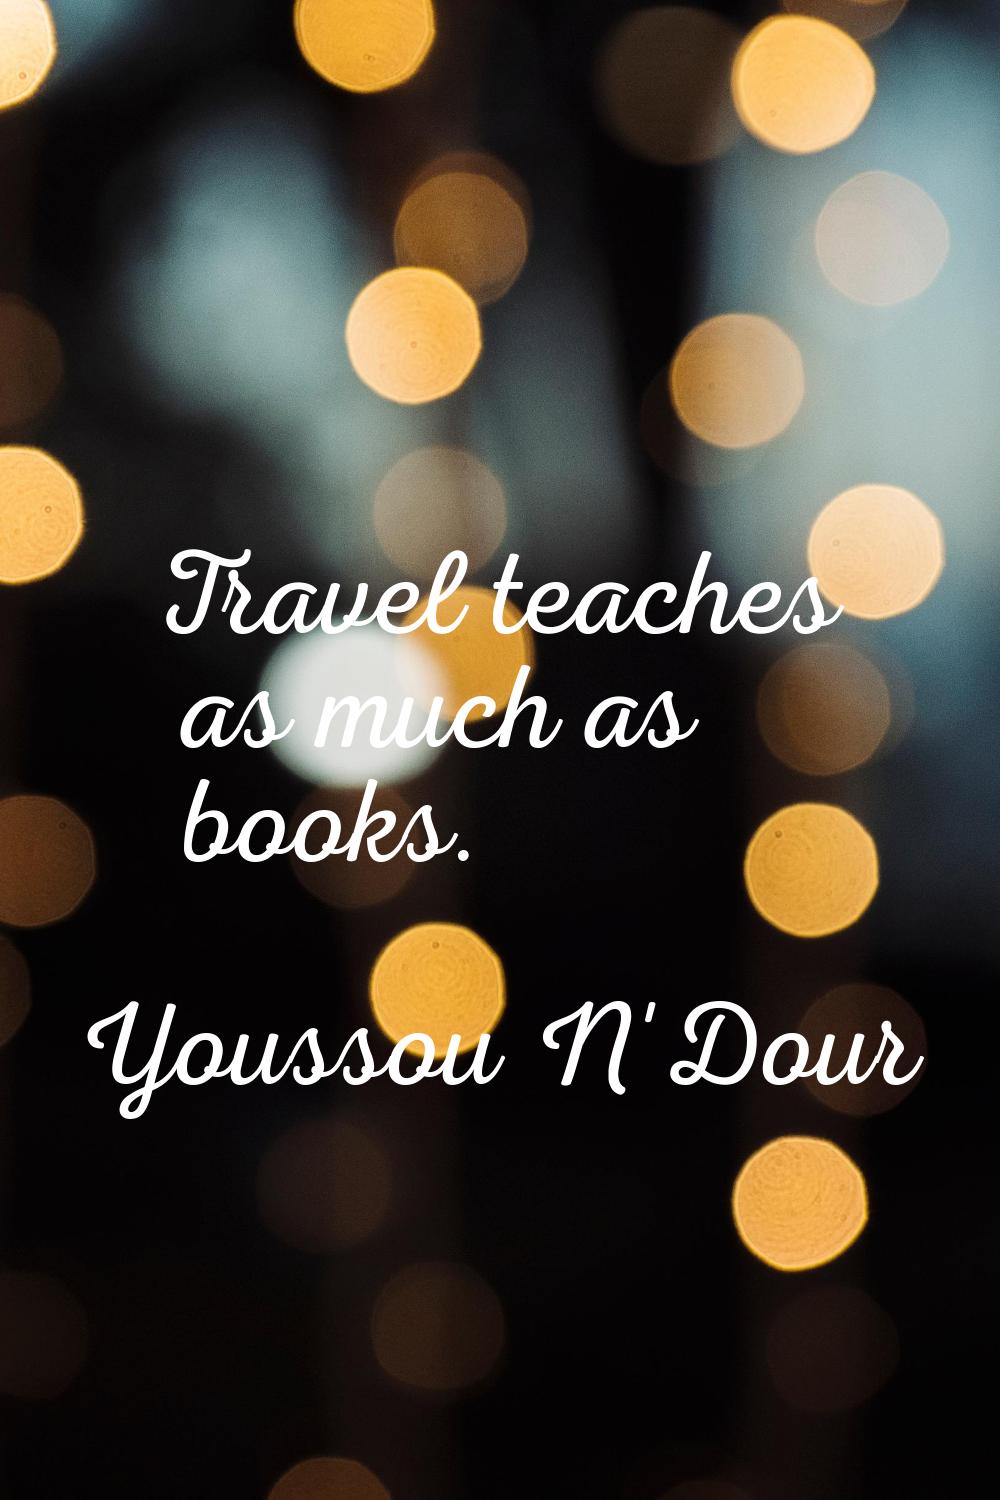 Travel teaches as much as books.